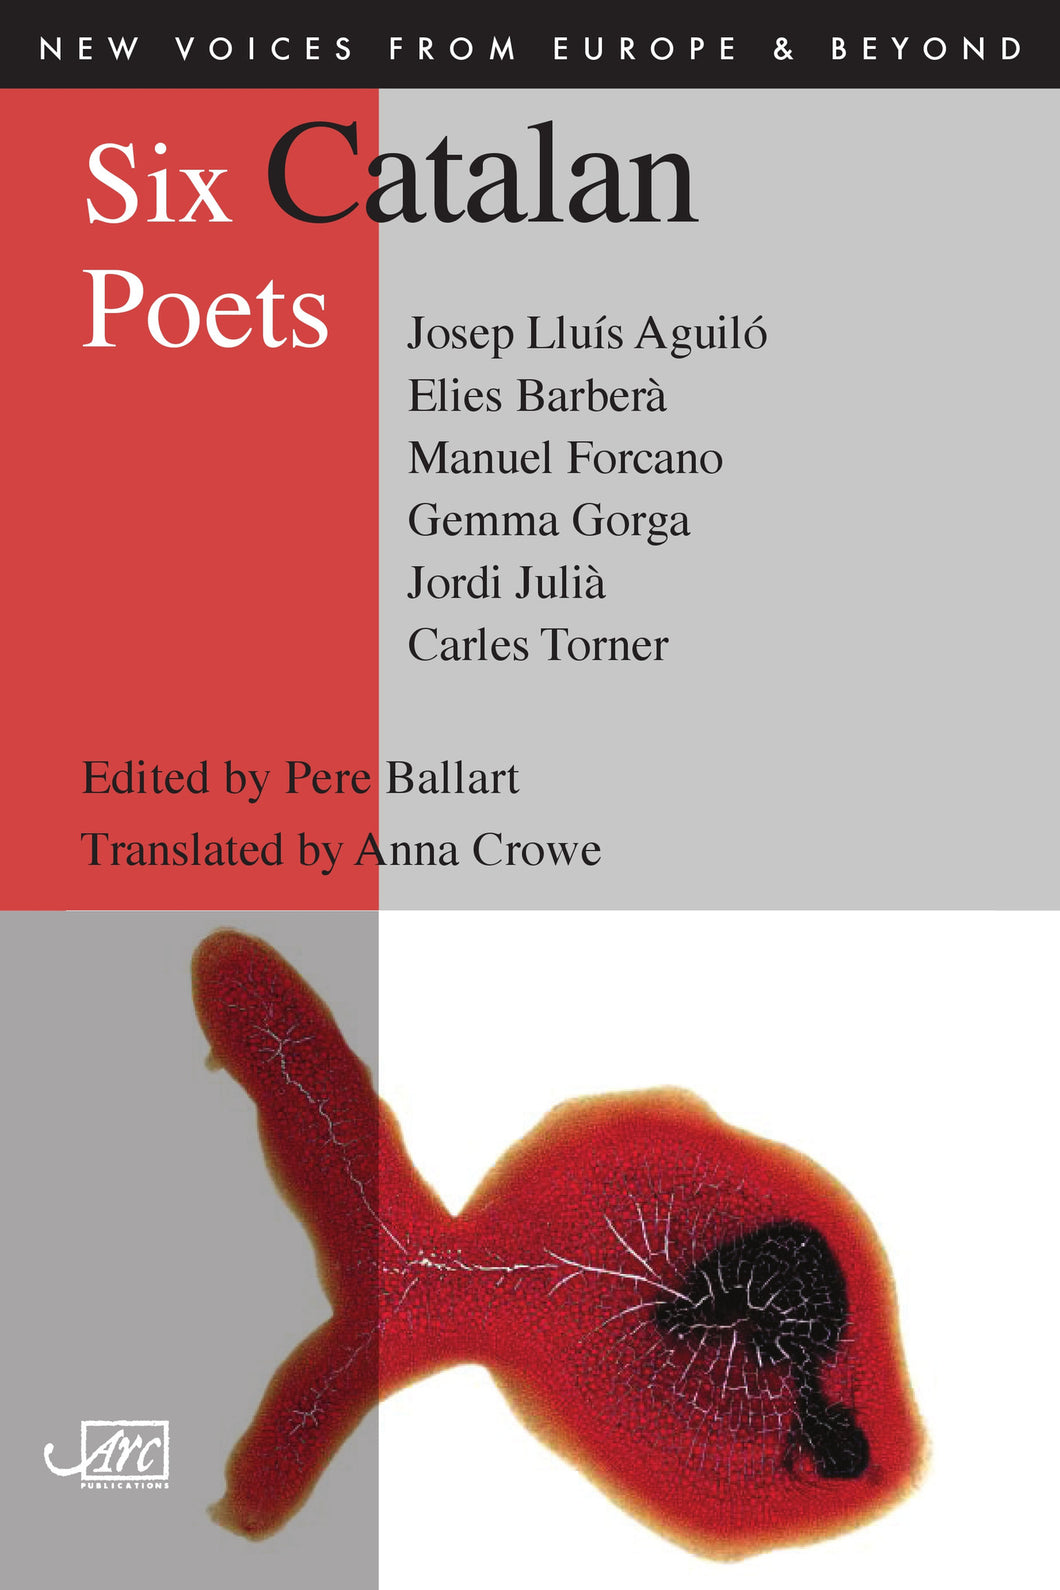 Six Catalan Poets